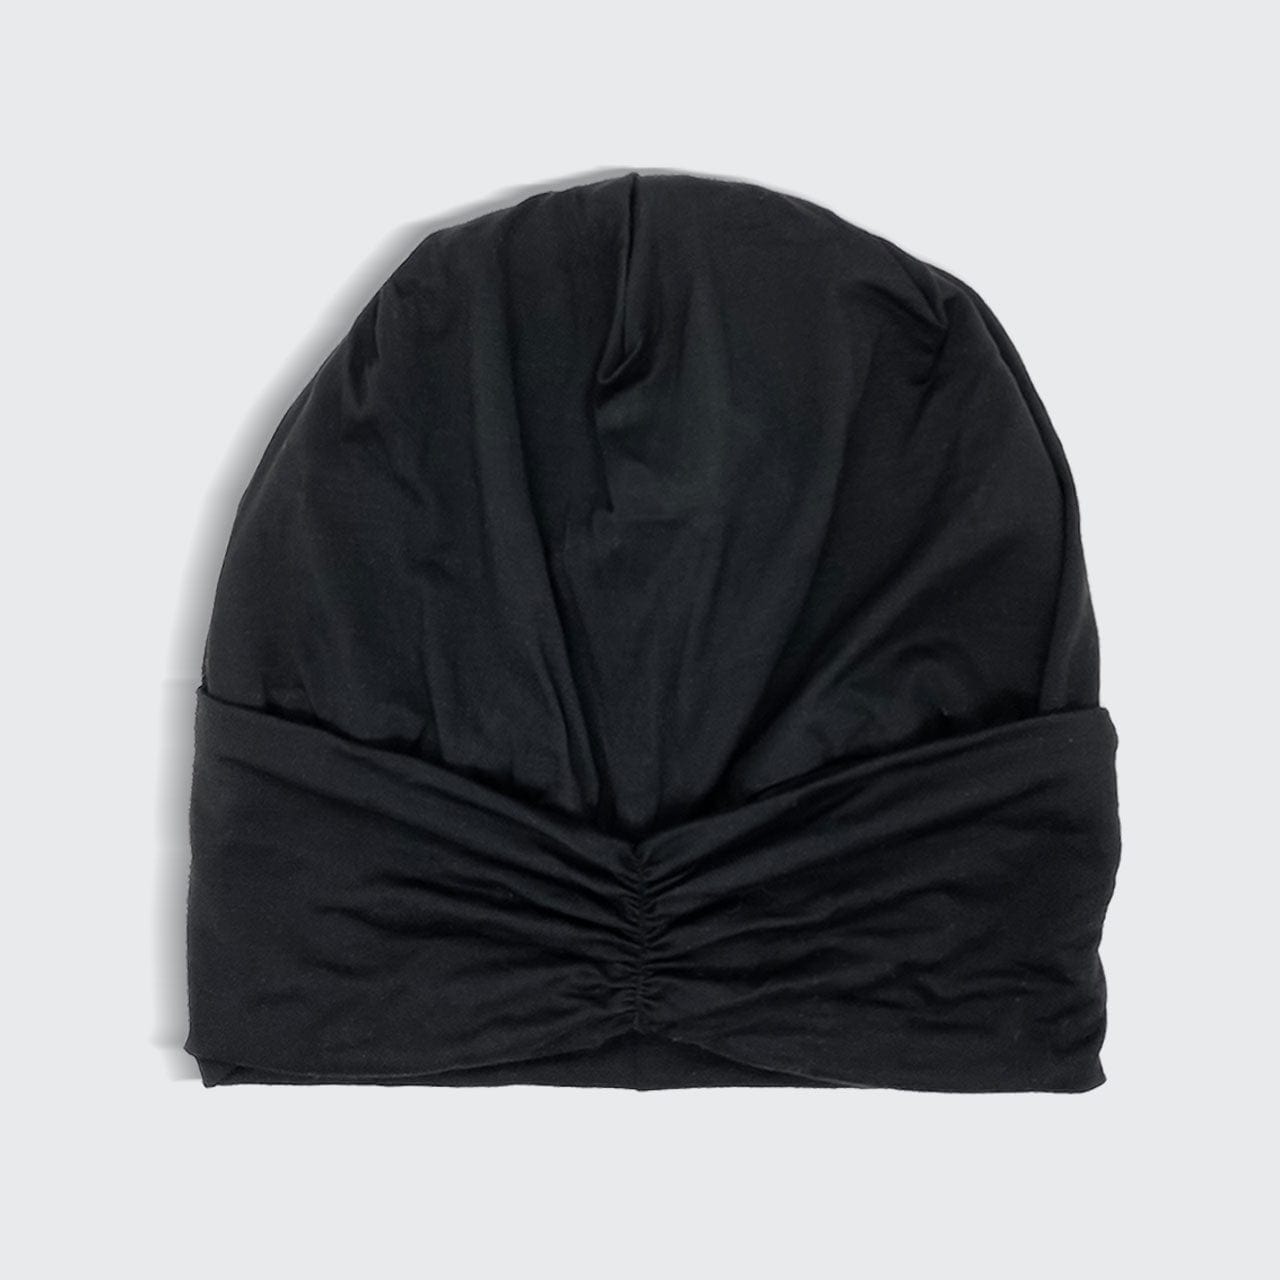 Satin Lined Jersey Bonnet - Black by KITSCH